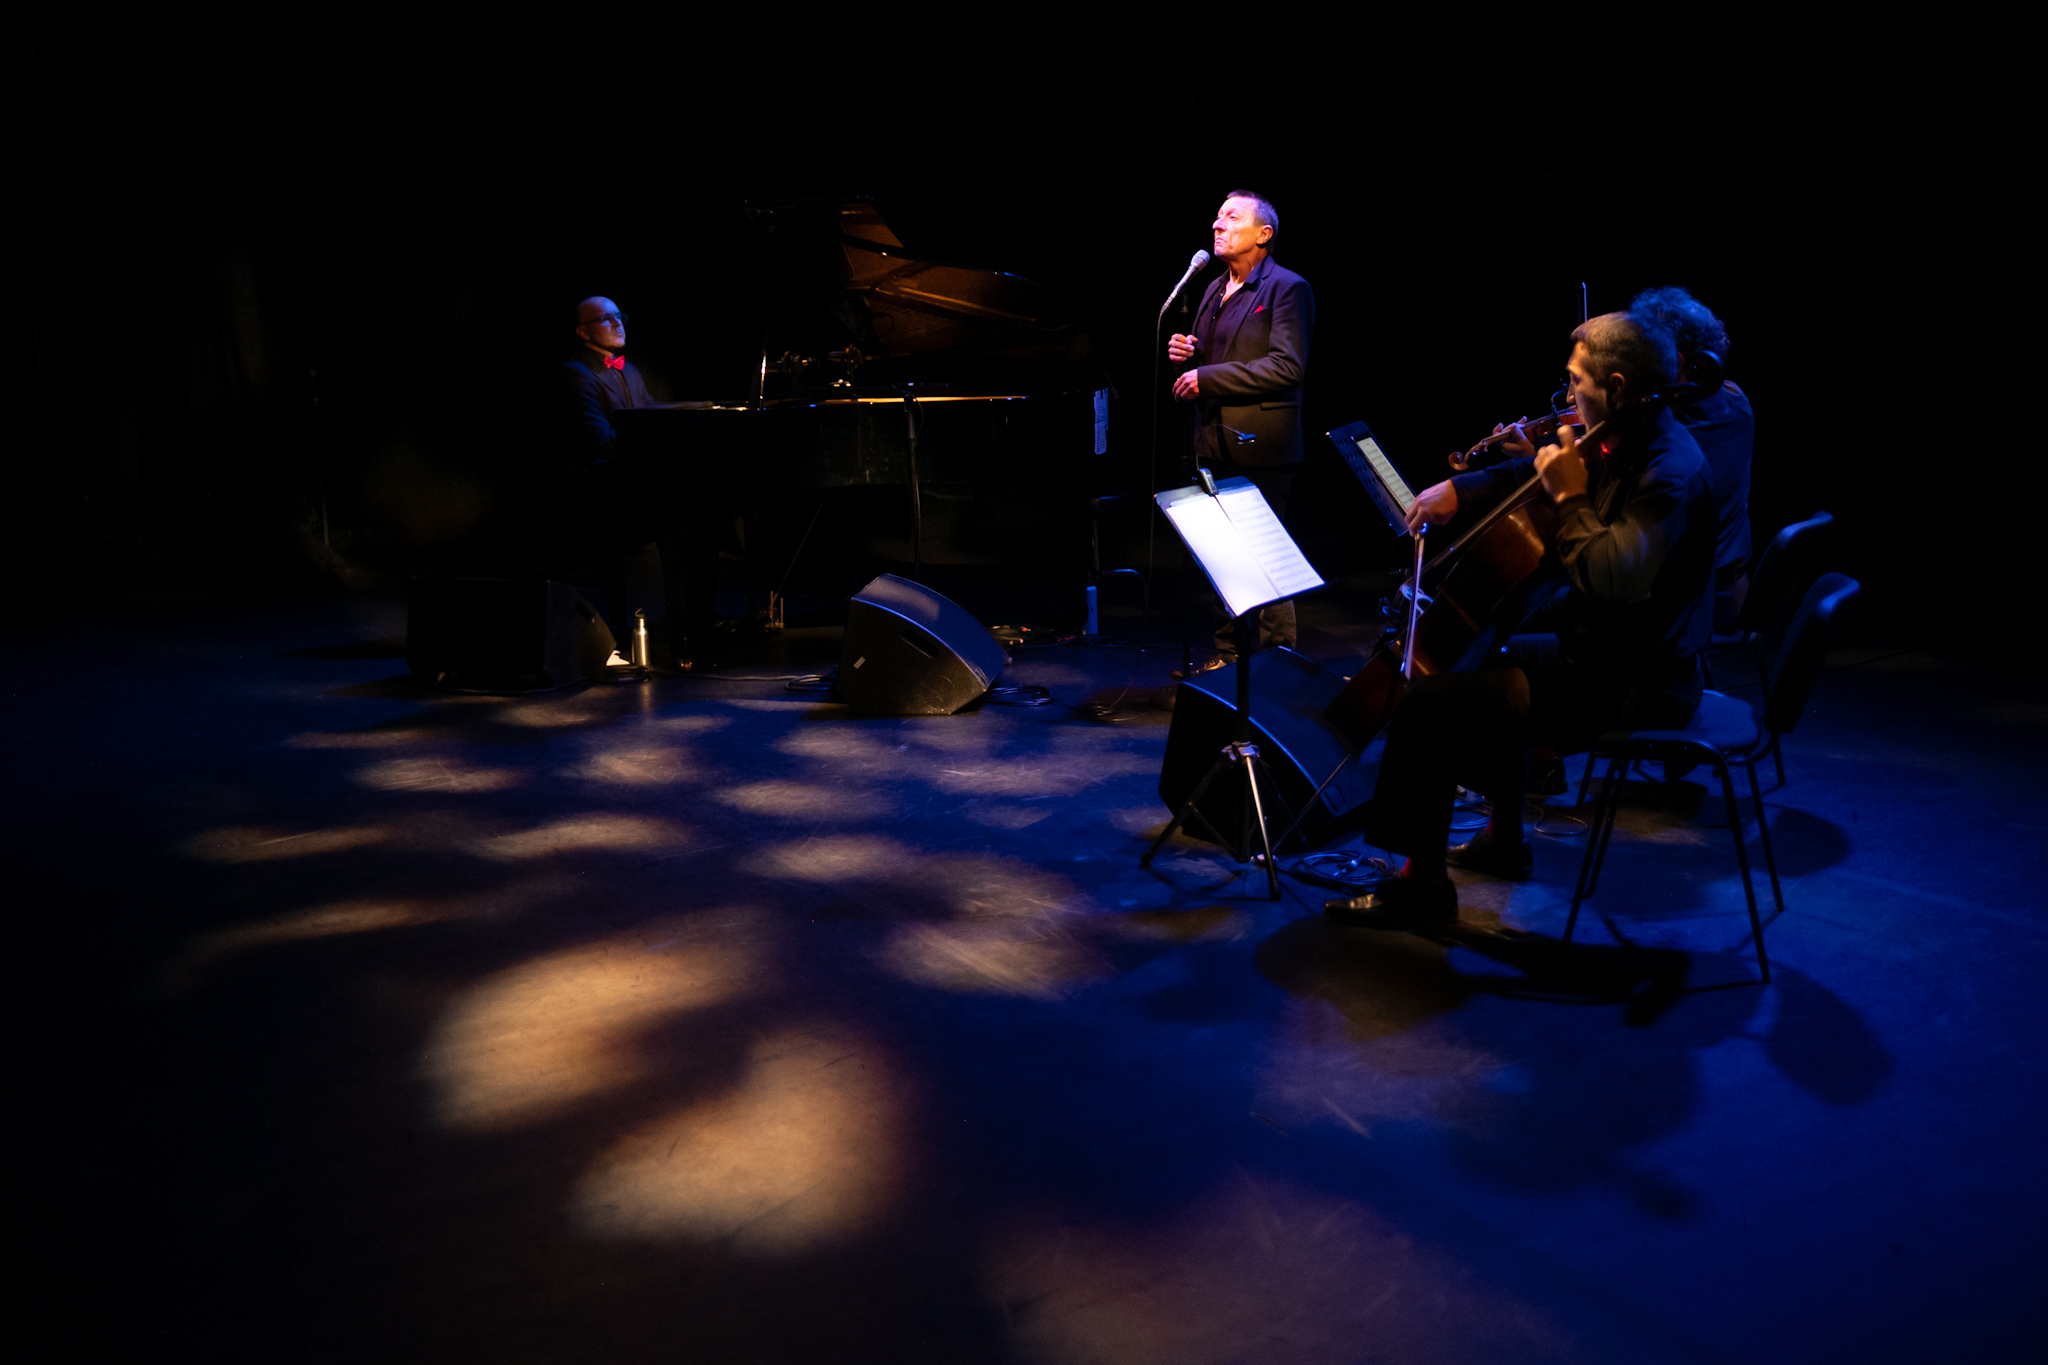 Photographie pour le spectacle Quatuor Reggiani de la Cie Scéna Viva, à Lyon/Villeurbanne, Espace Tonkin, musique classique, théâtre